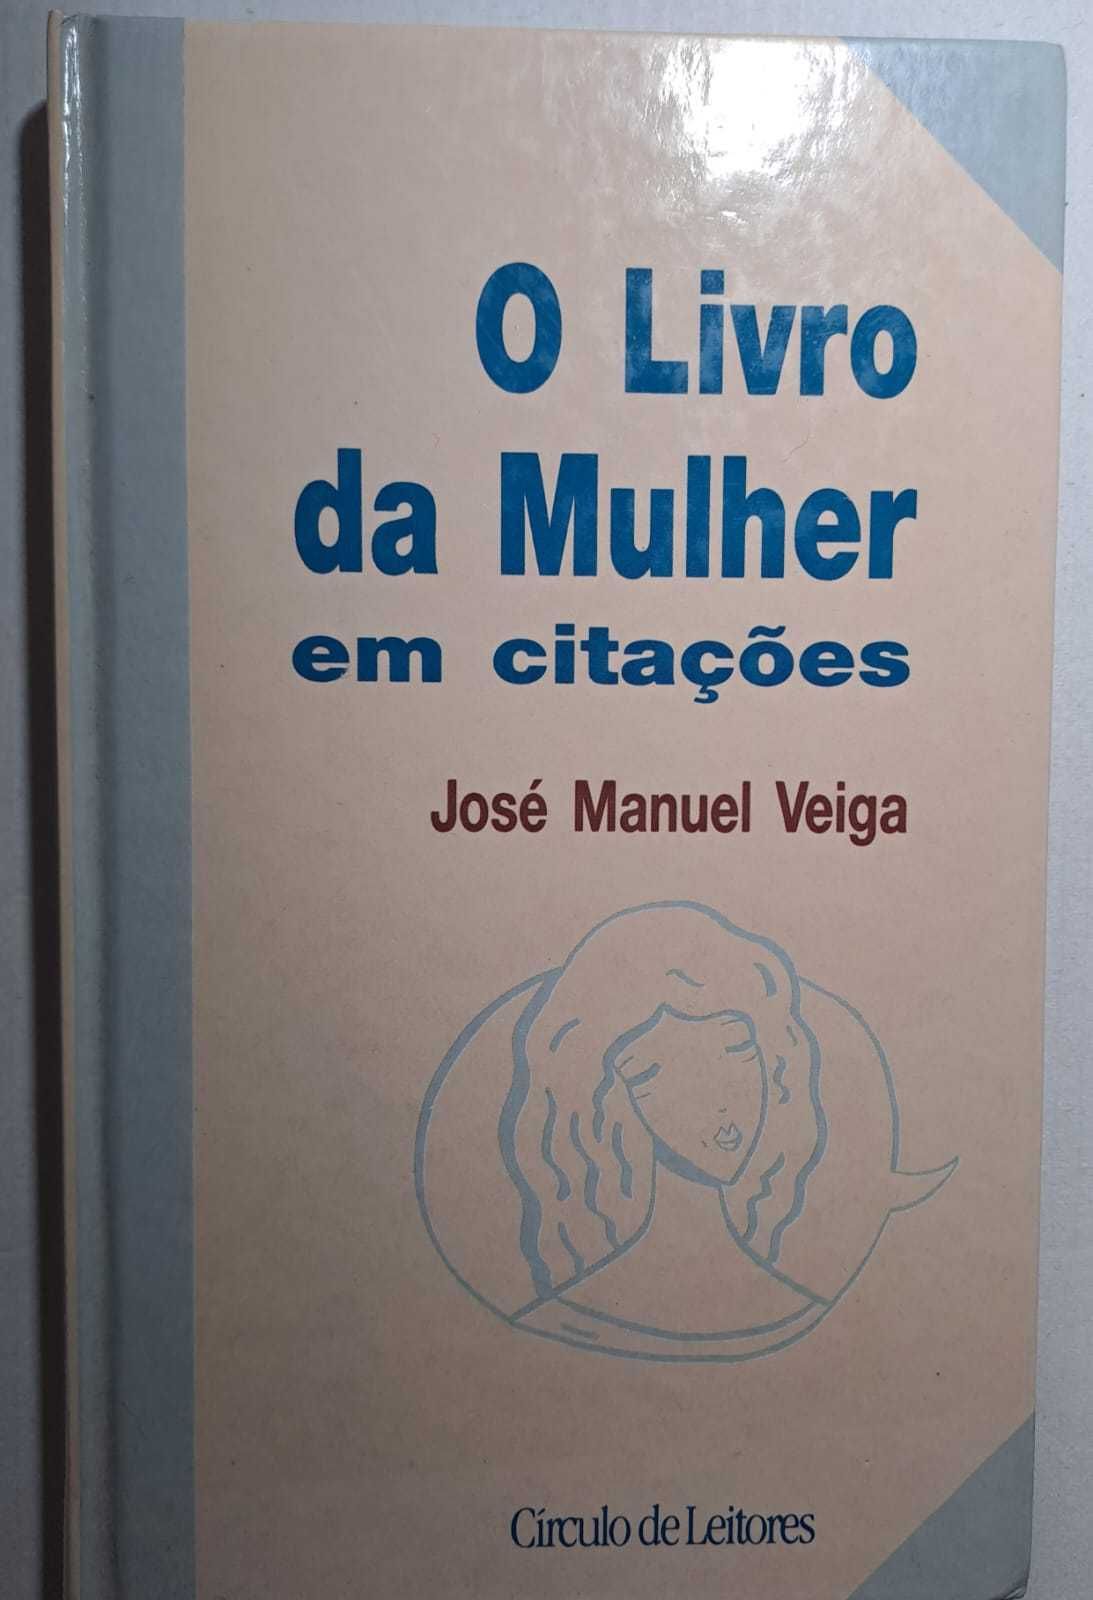 Portes Incluídos - "O Livro da Mulher em Citações" - José Manuel Veiga